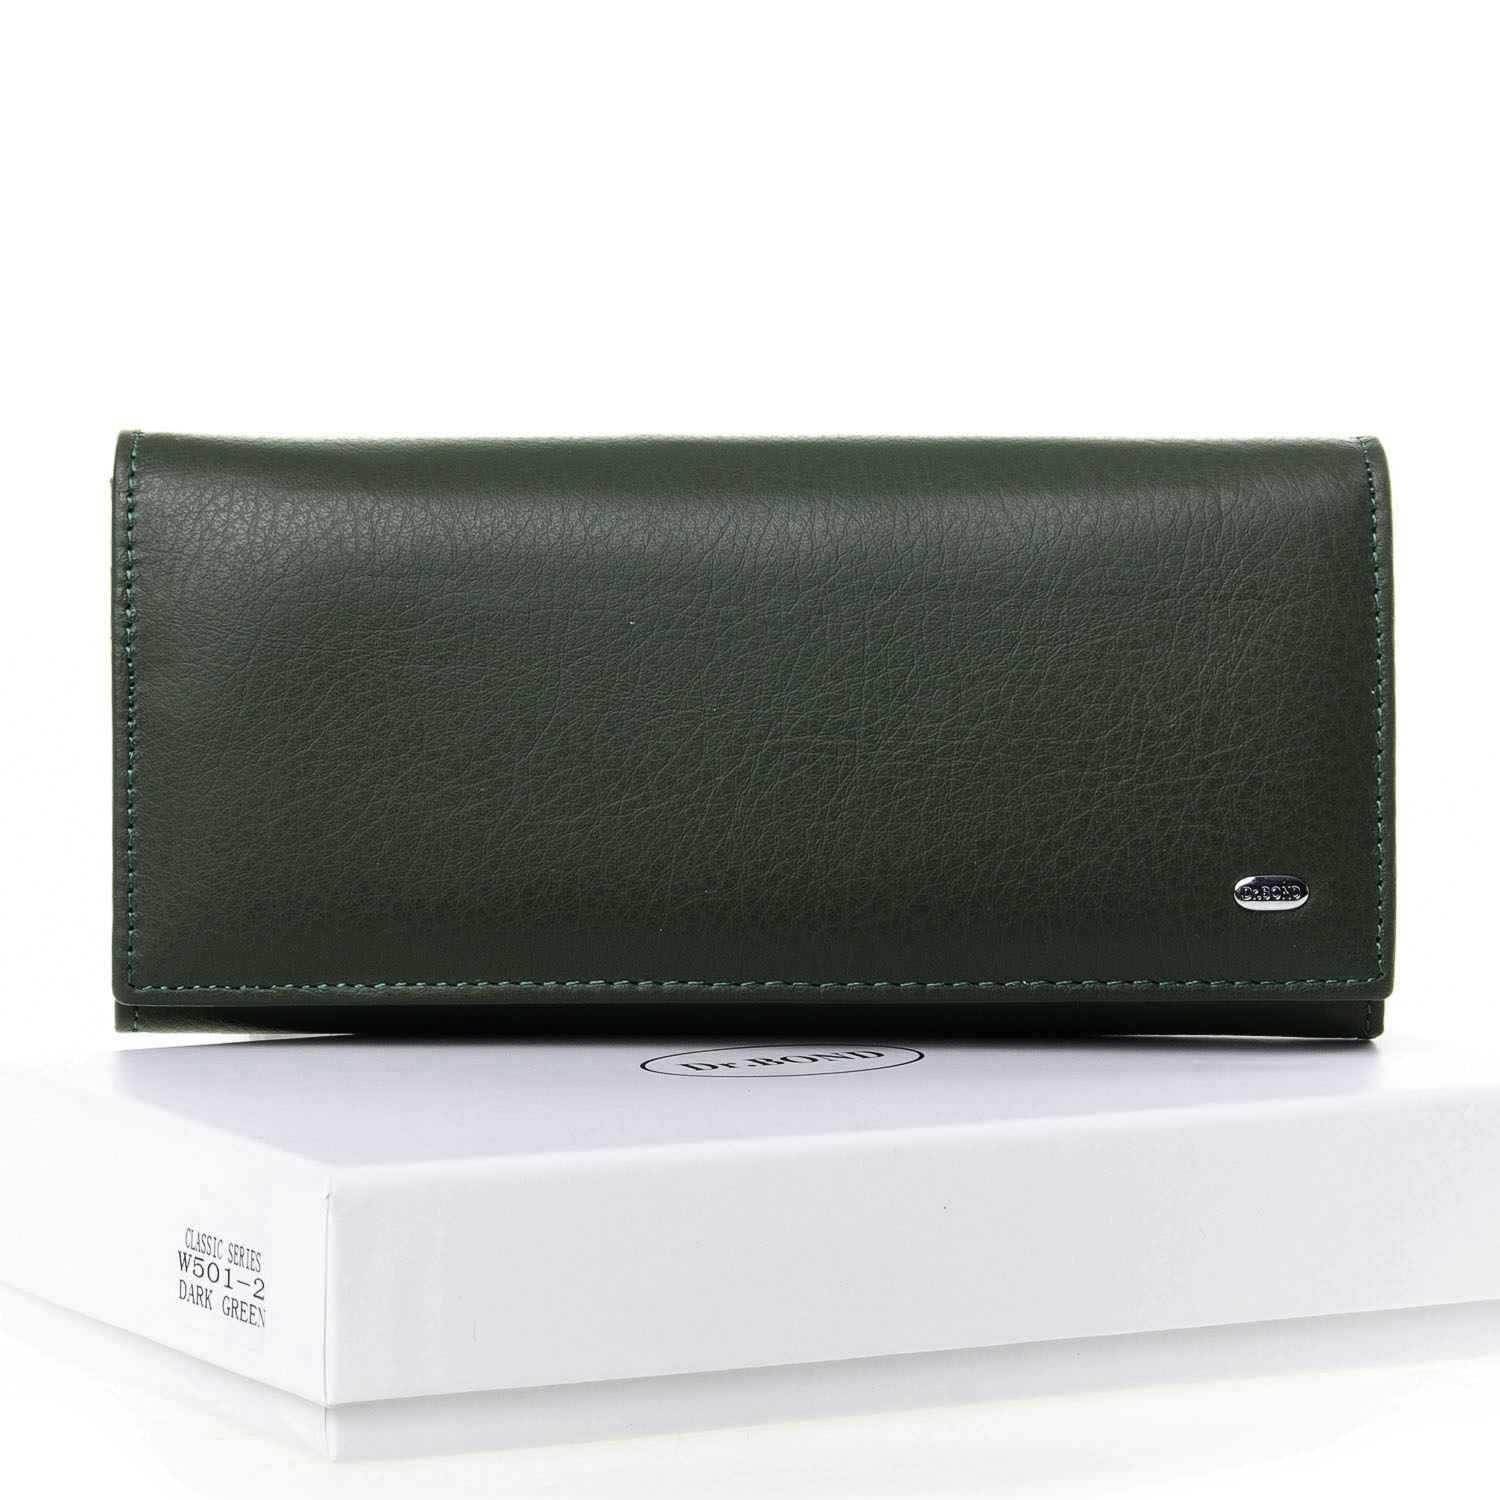 Кожаный кошелек женский зеленый DR. BOND W501-2 dark-green